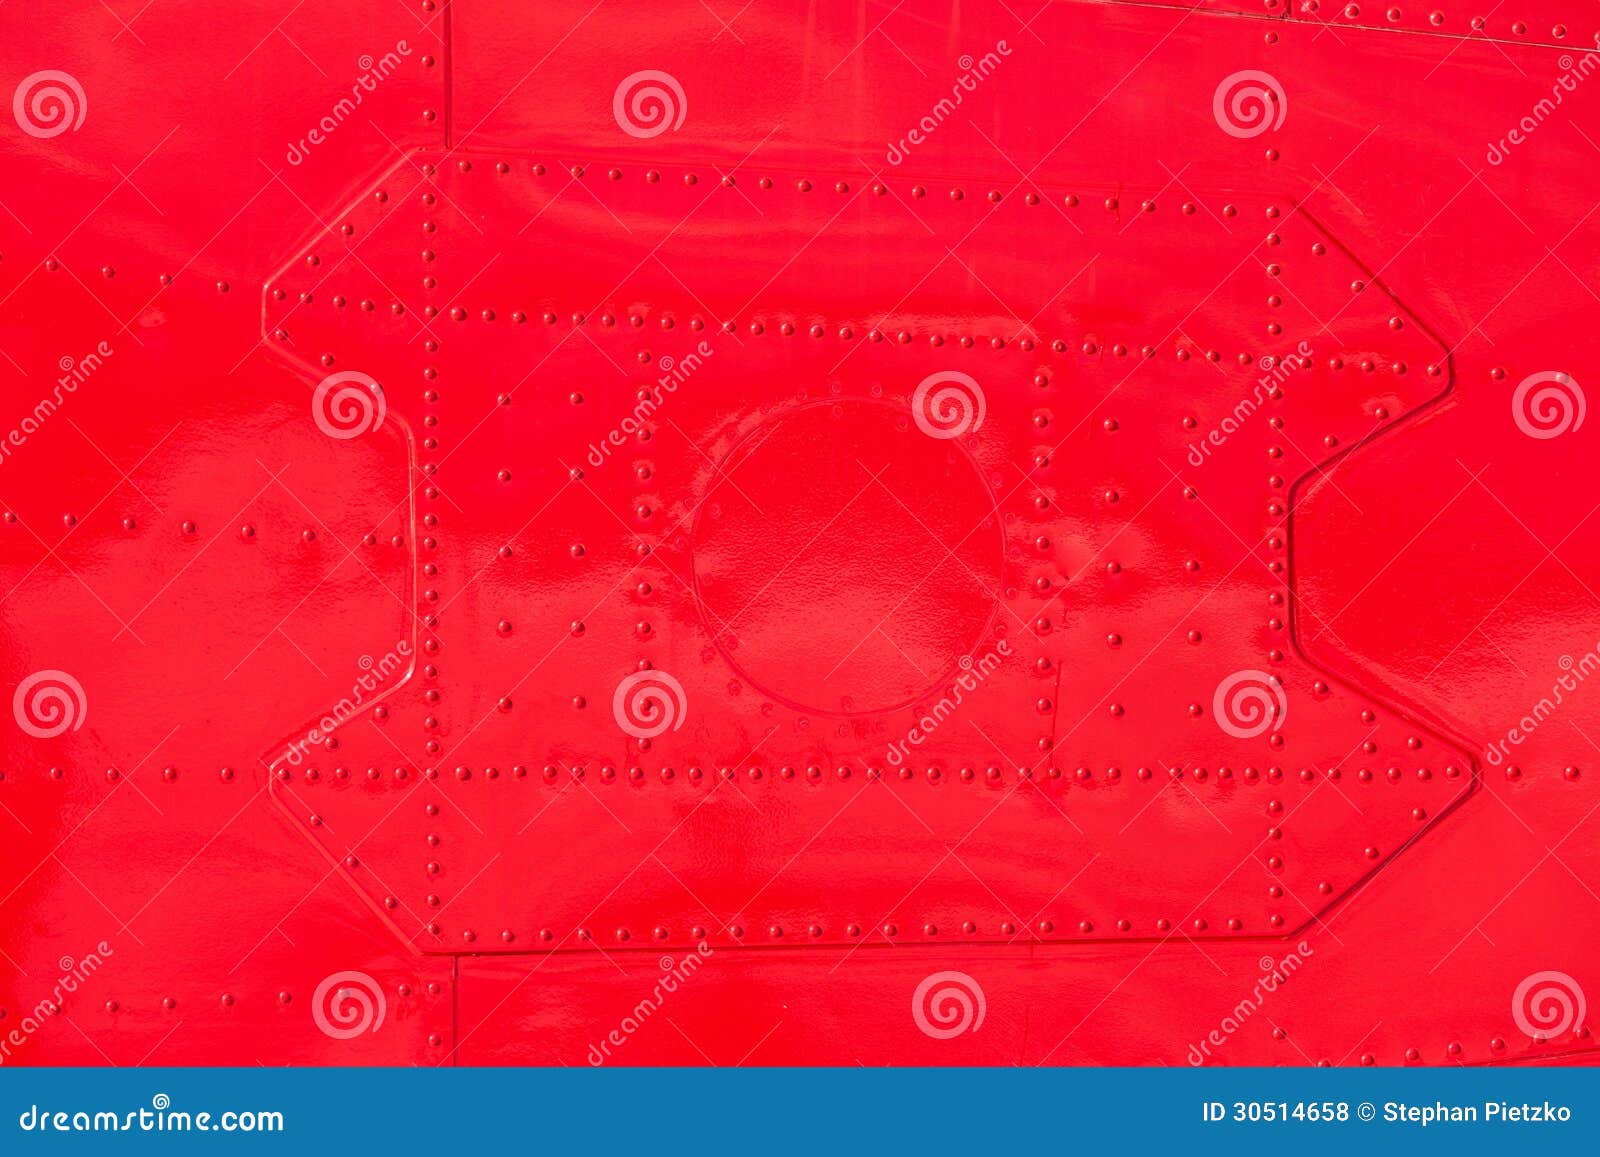 red painted riveted metal airplane fuselage skin